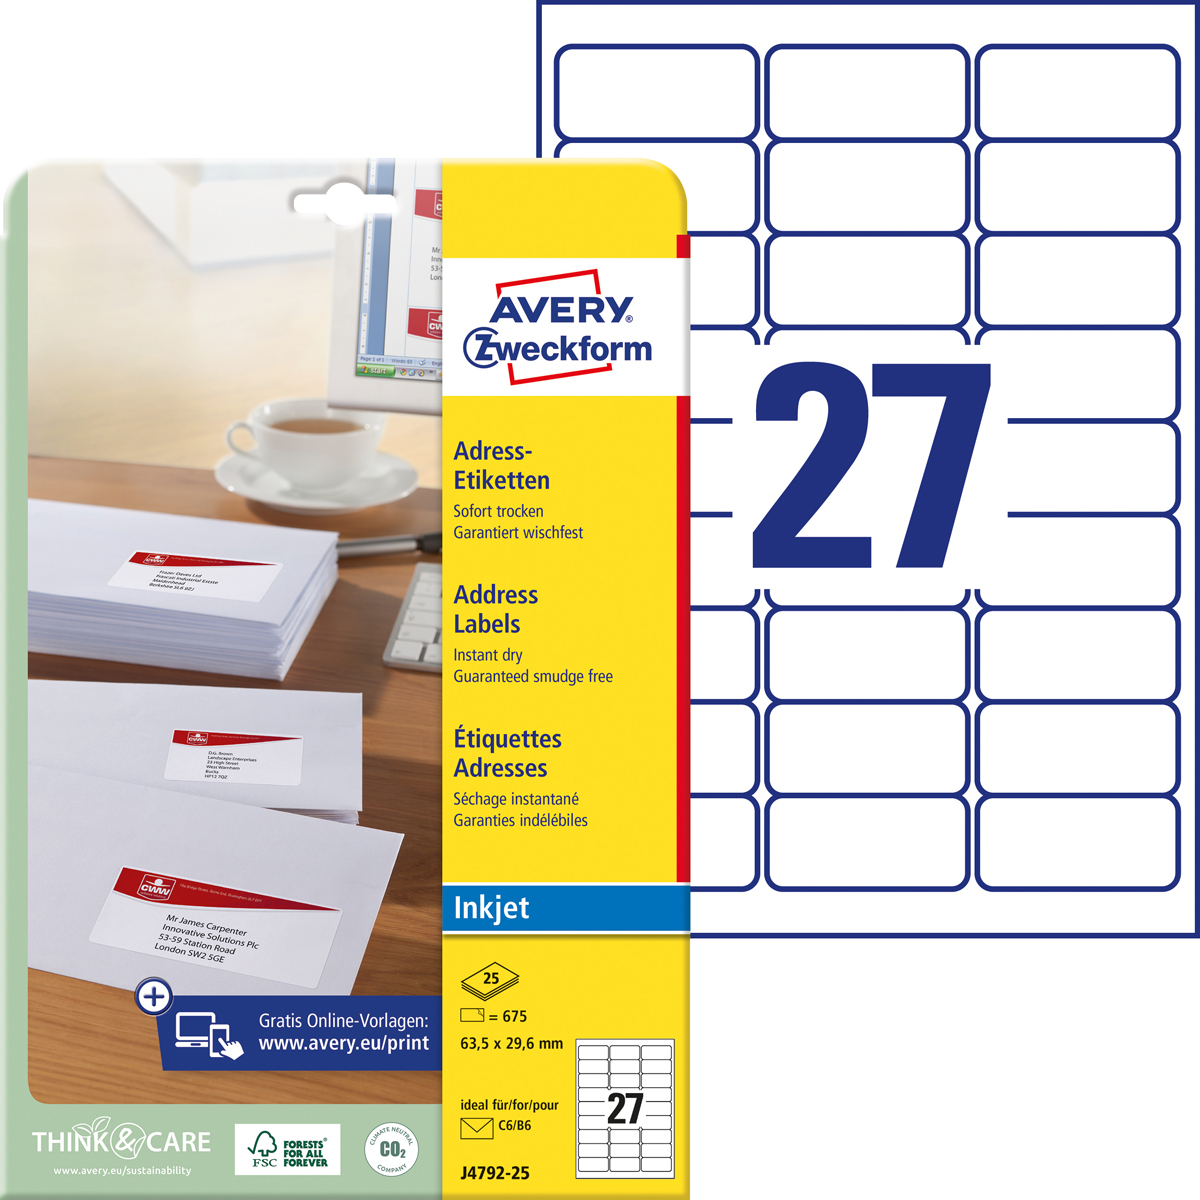 Avery Zweckform J4792-25 Adress-Etiketten, 63,5 x, 29,6 mm, C6 Kuverts, 25 Bogen/675 Etiketten, weiß